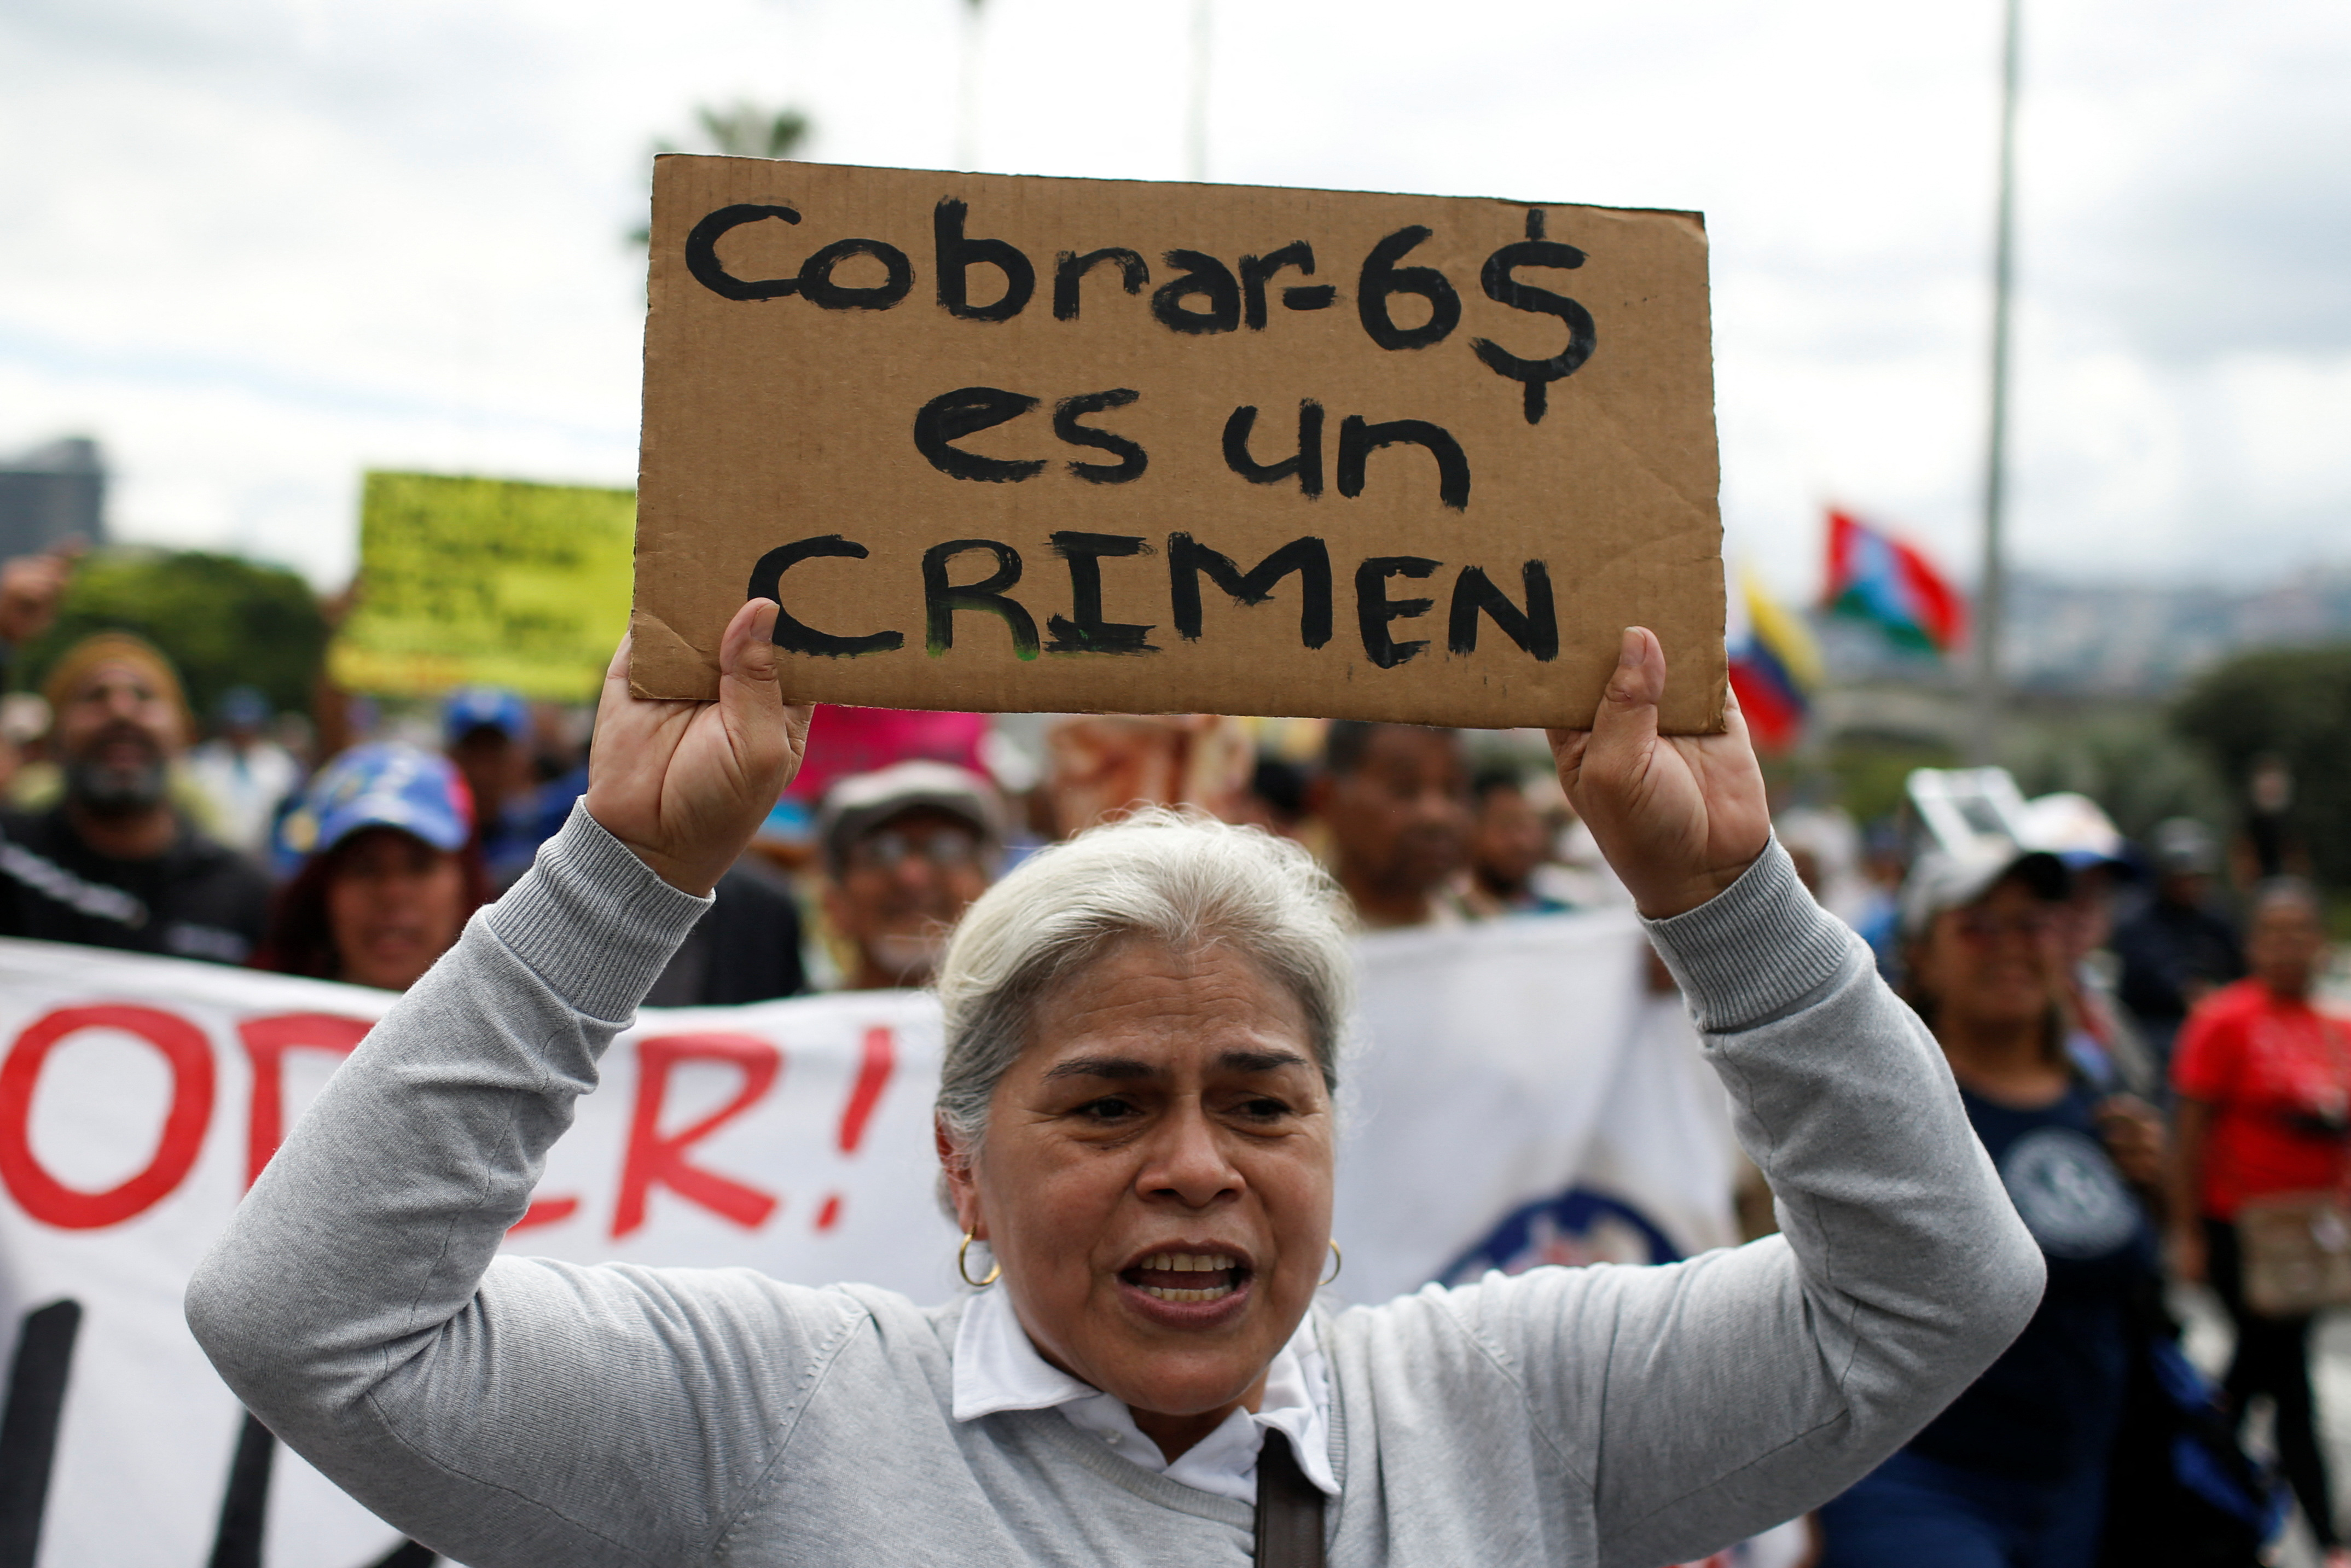 El salario mínimo en Venezuela es de 6 dólares; una docente asegura durante una protesta que cobrar eso "es un crimen" (REUTERS/Leonardo Fernandez Viloria)